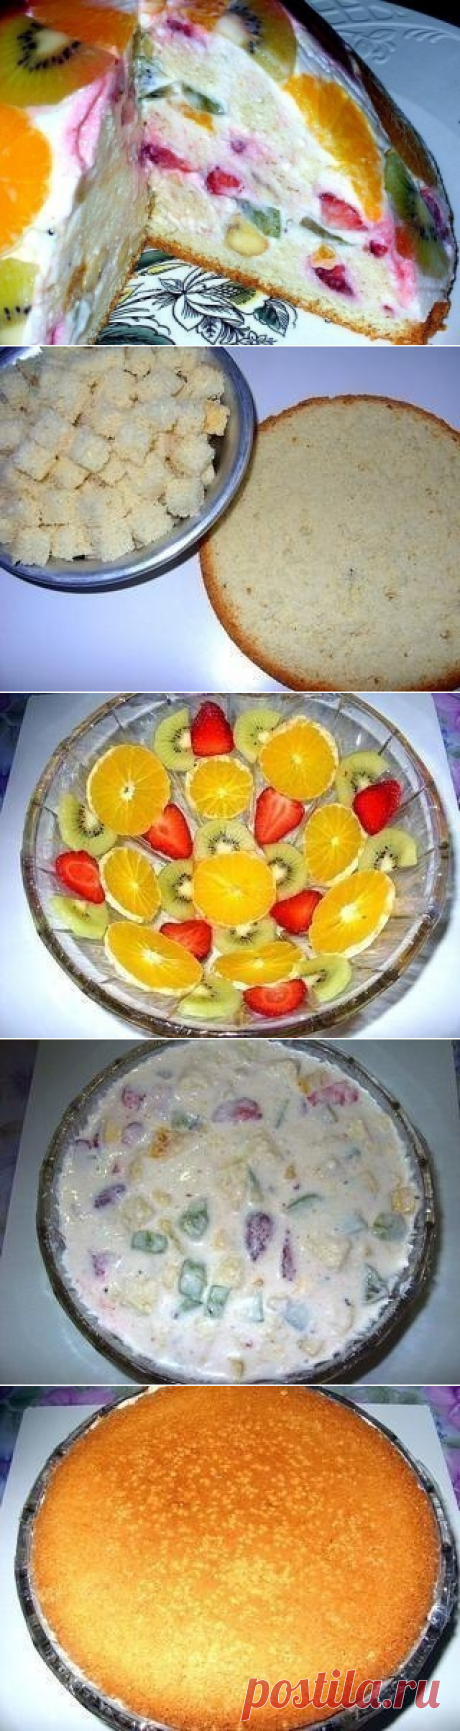 Как приготовить фруктово-бисквитный торт  - рецепт, ингредиенты и фотографии